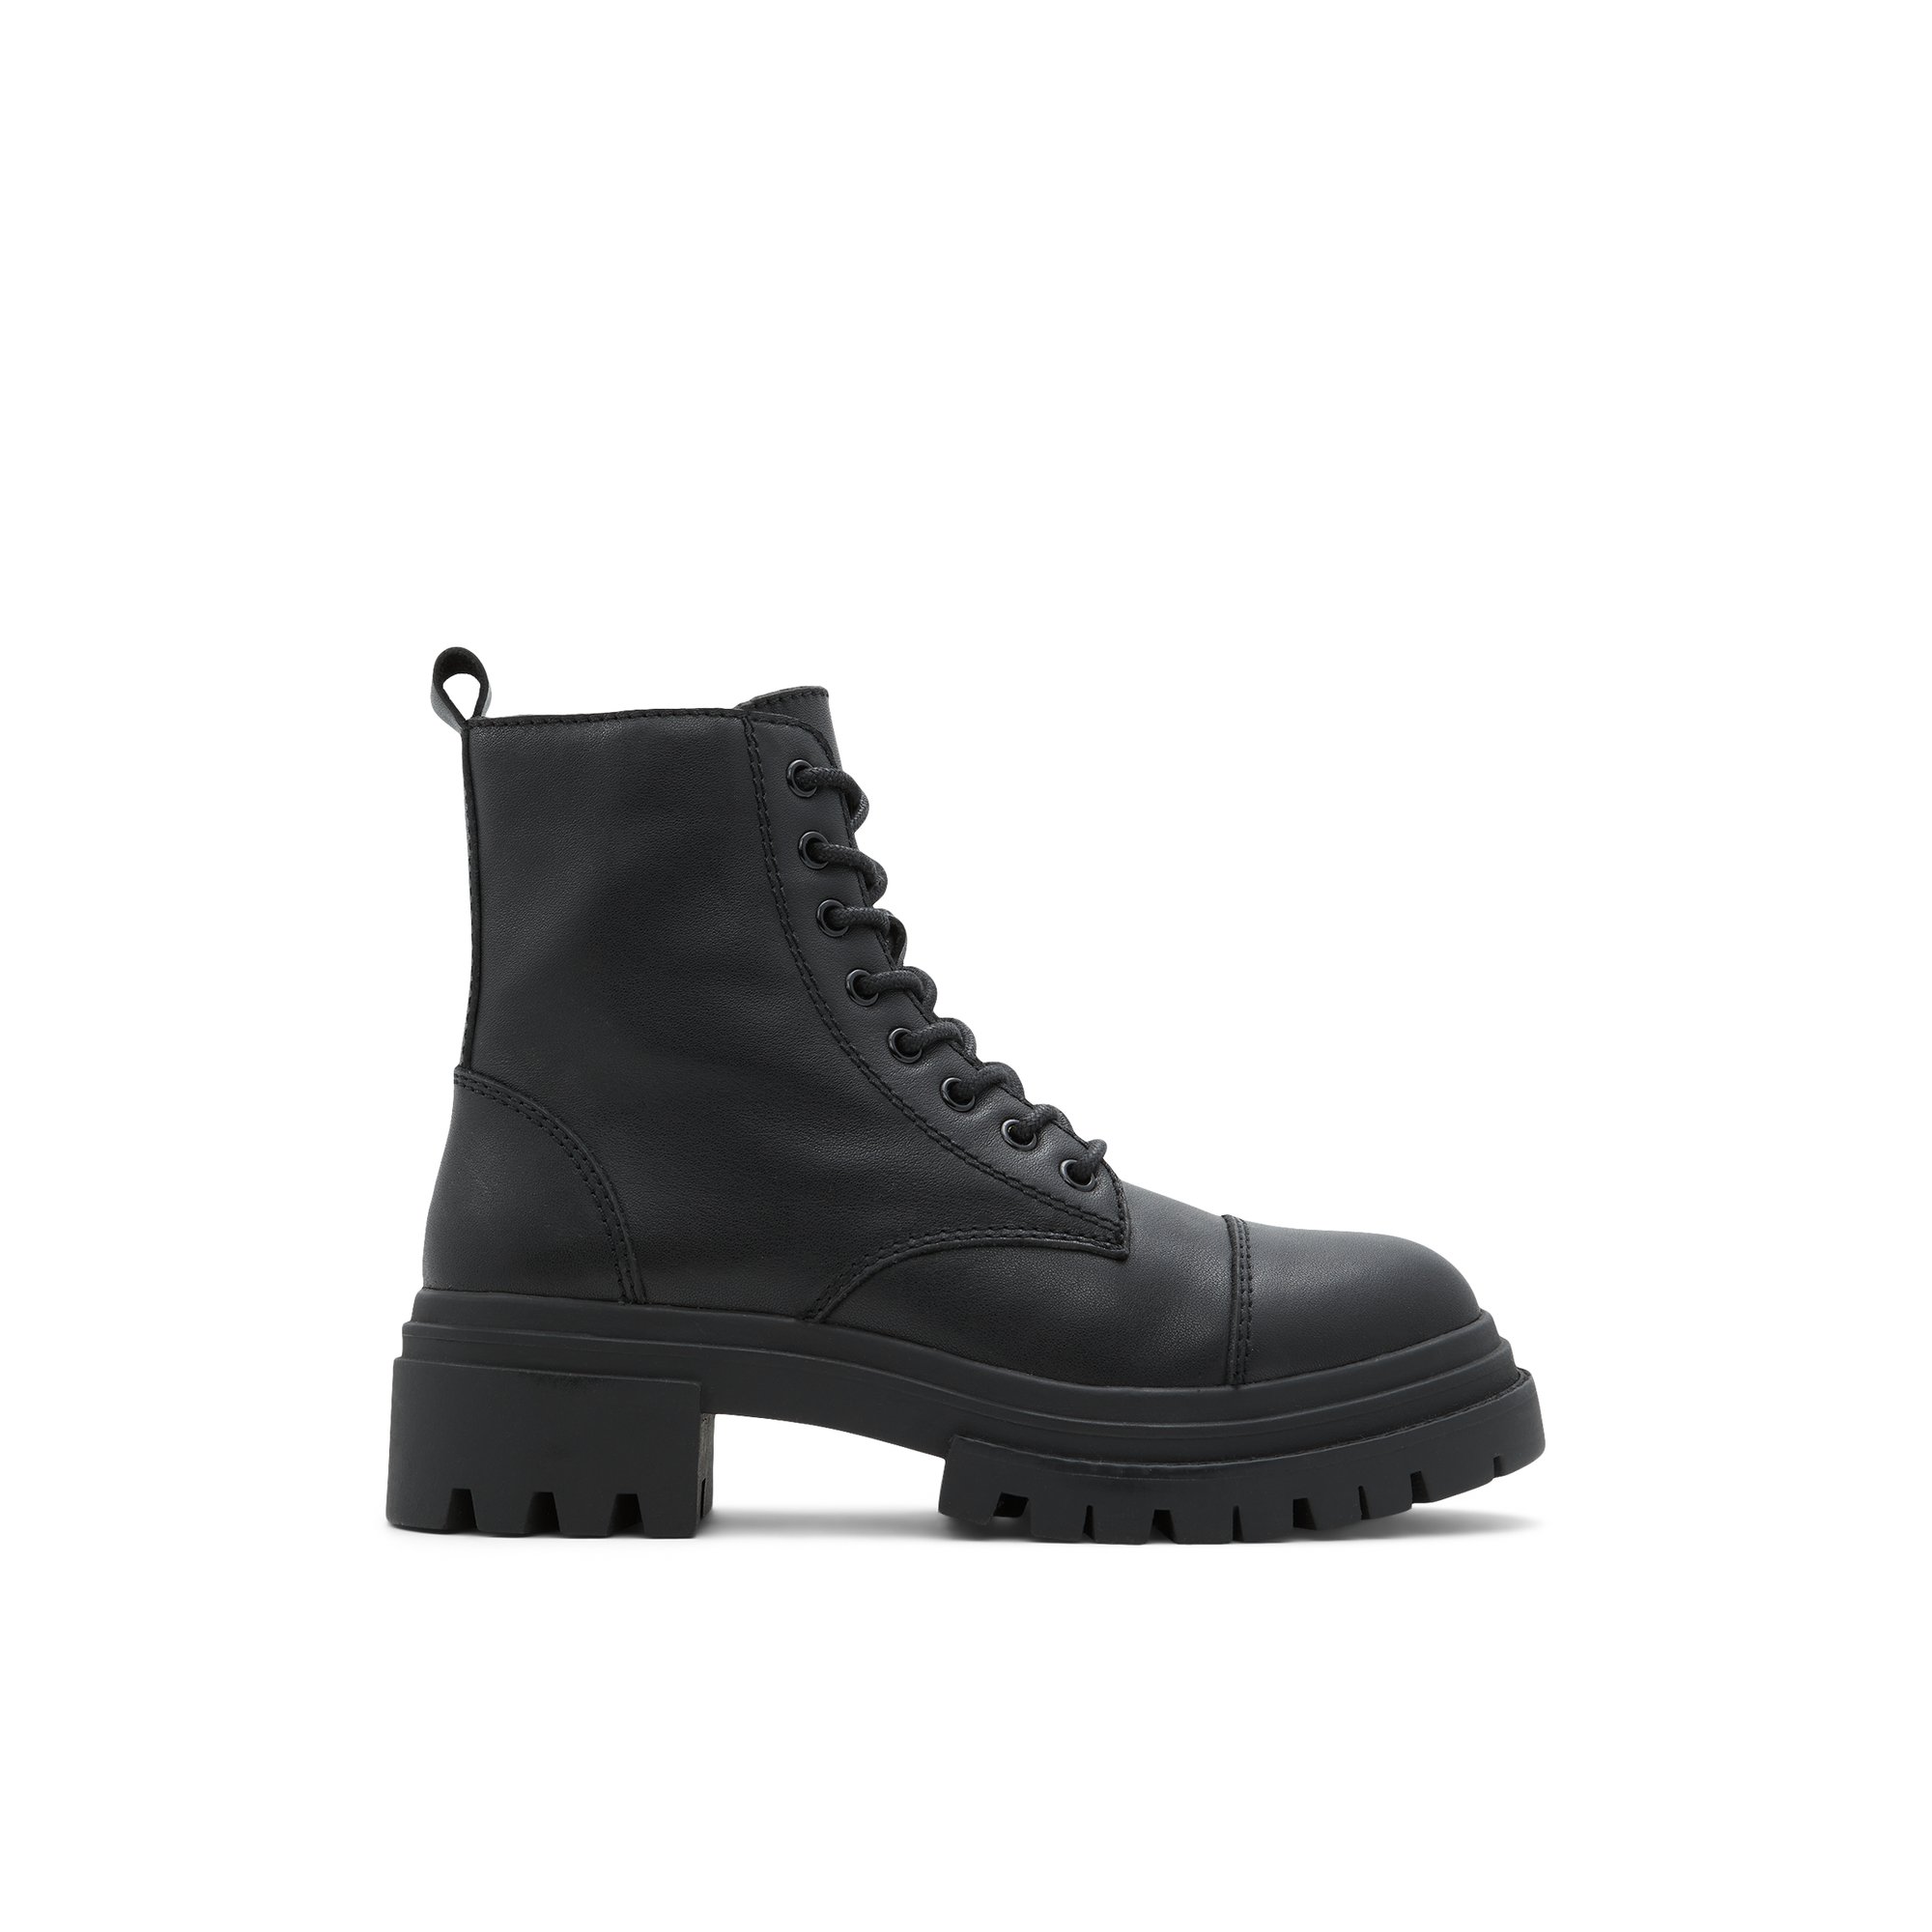 ALDO Bigmark - Women's Boots Combat - Black